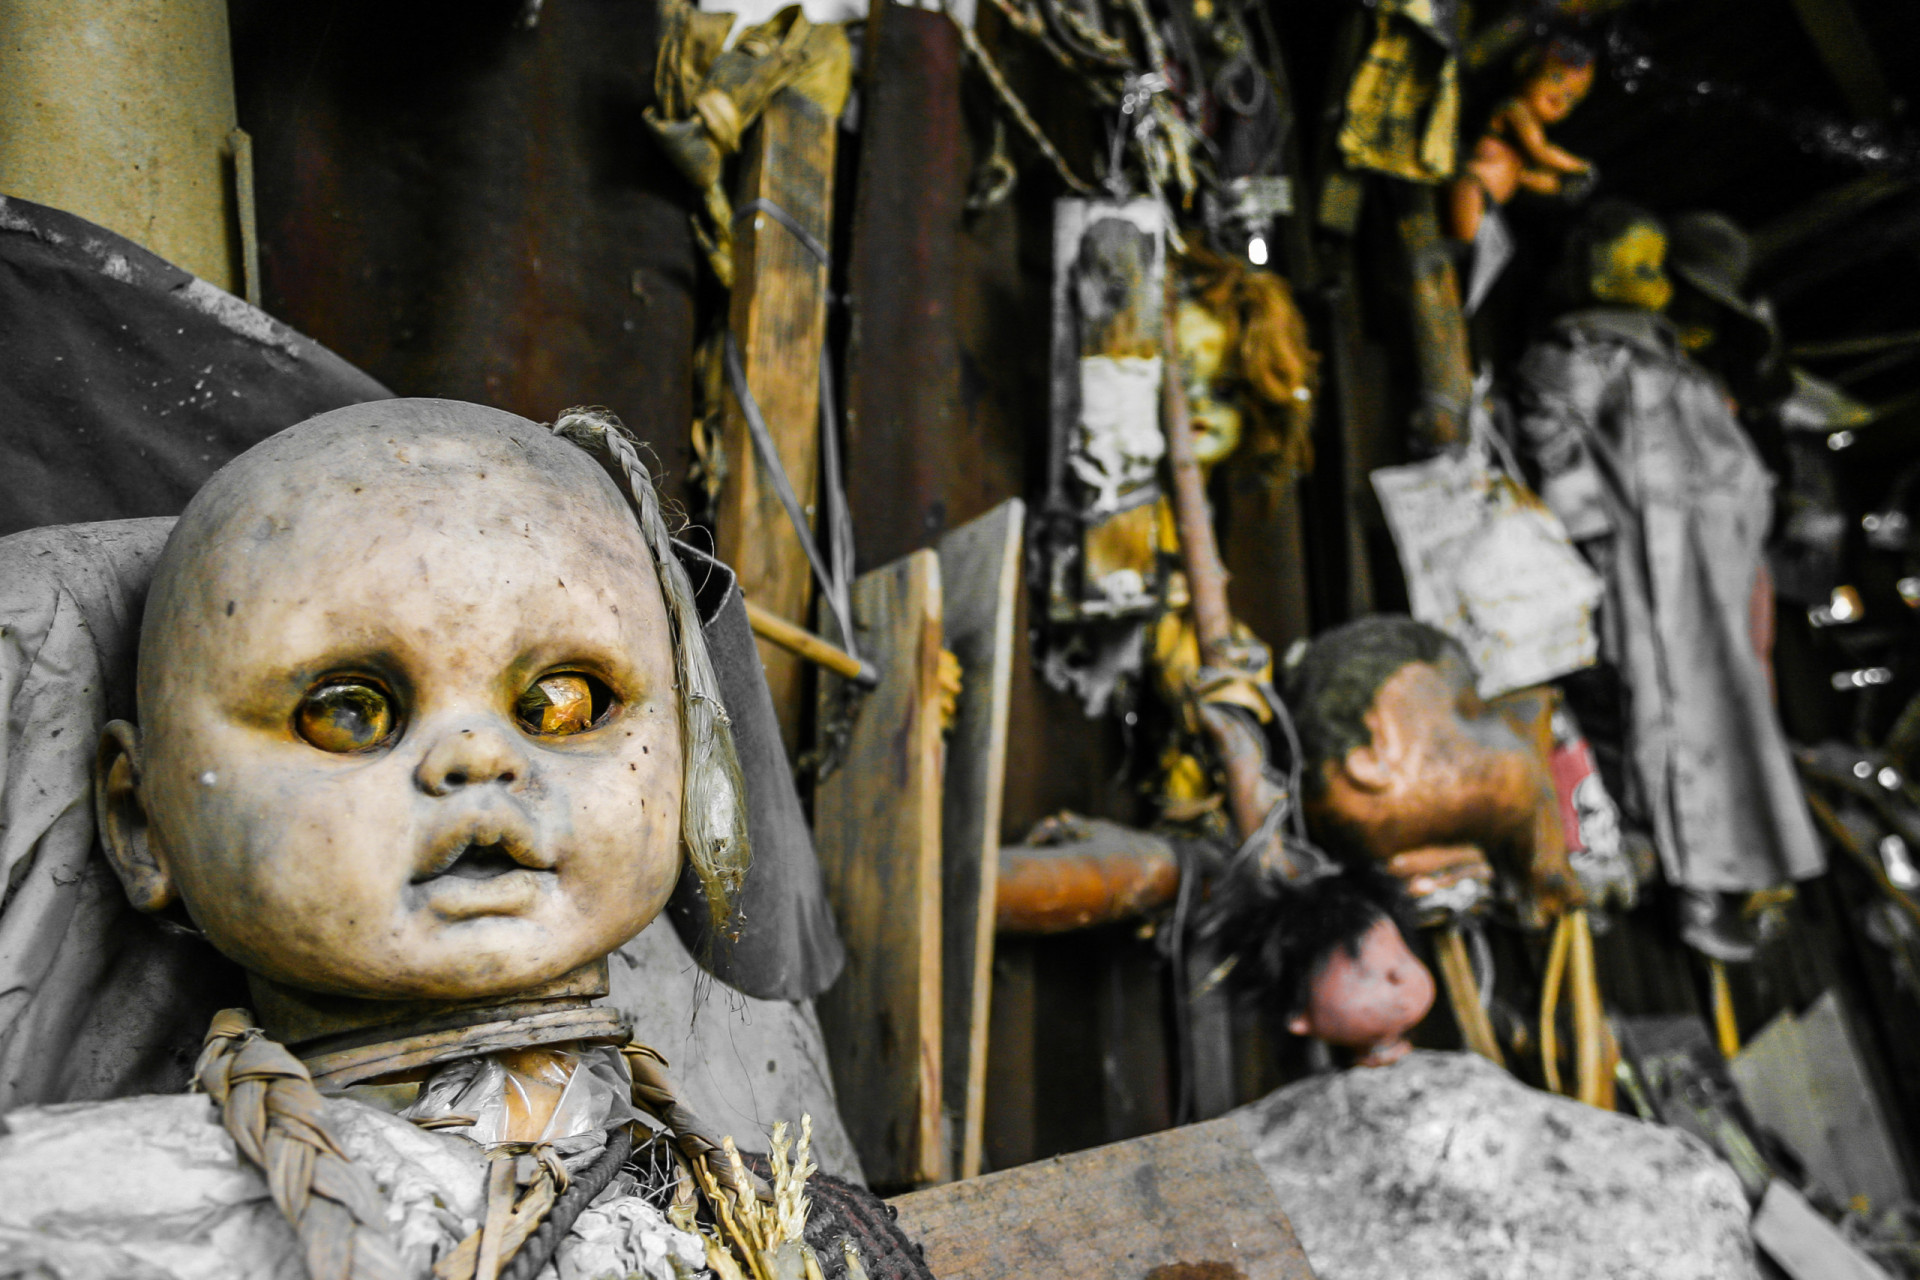 <p><a href="https://www.starsinsider.com/fr/voyage/227232/lile-aux-poupees-le-lieu-le-plus-angoissant-du-monde" rel="noopener">Des centaines de poupées</a> apparaissent dans les forêts insulaires de Xochimilco, près de Mexico. Cette installation malsaine aurait été inspirée par la découverte du corps d'un jeune enfant dans l'un des canaux...</p>